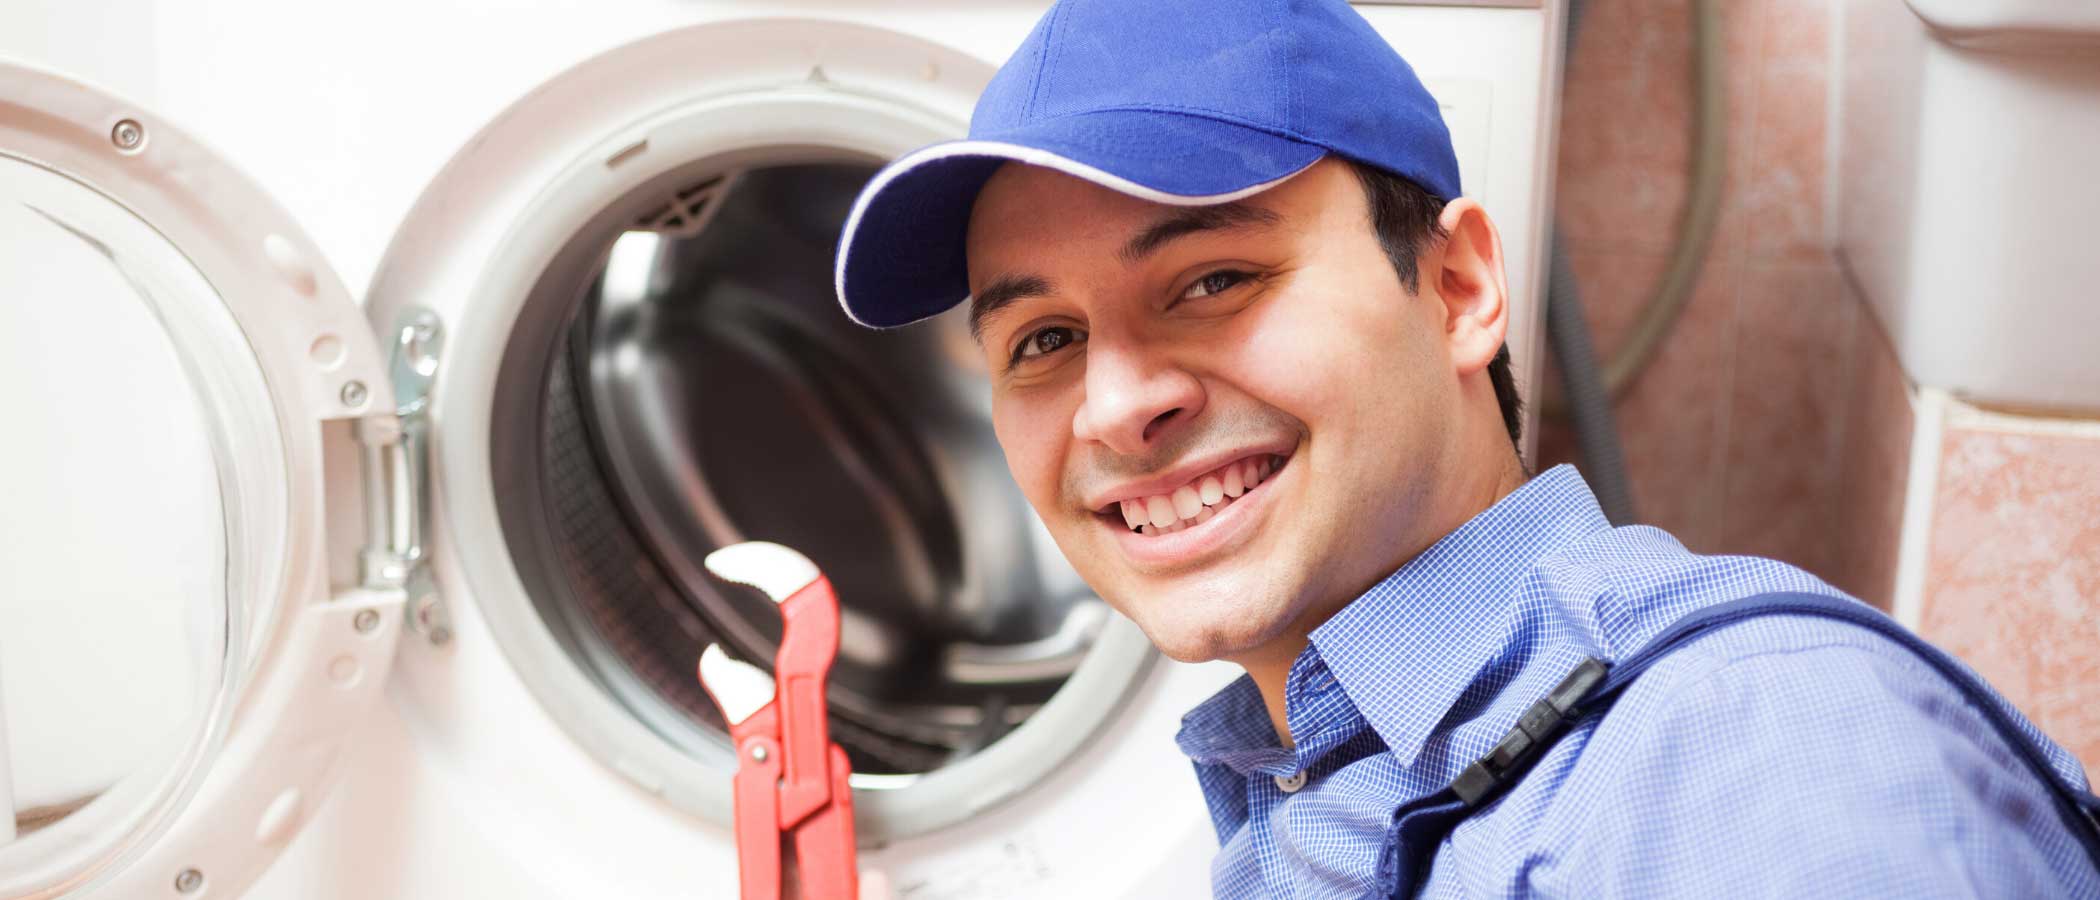 dryer repairs unit appliances